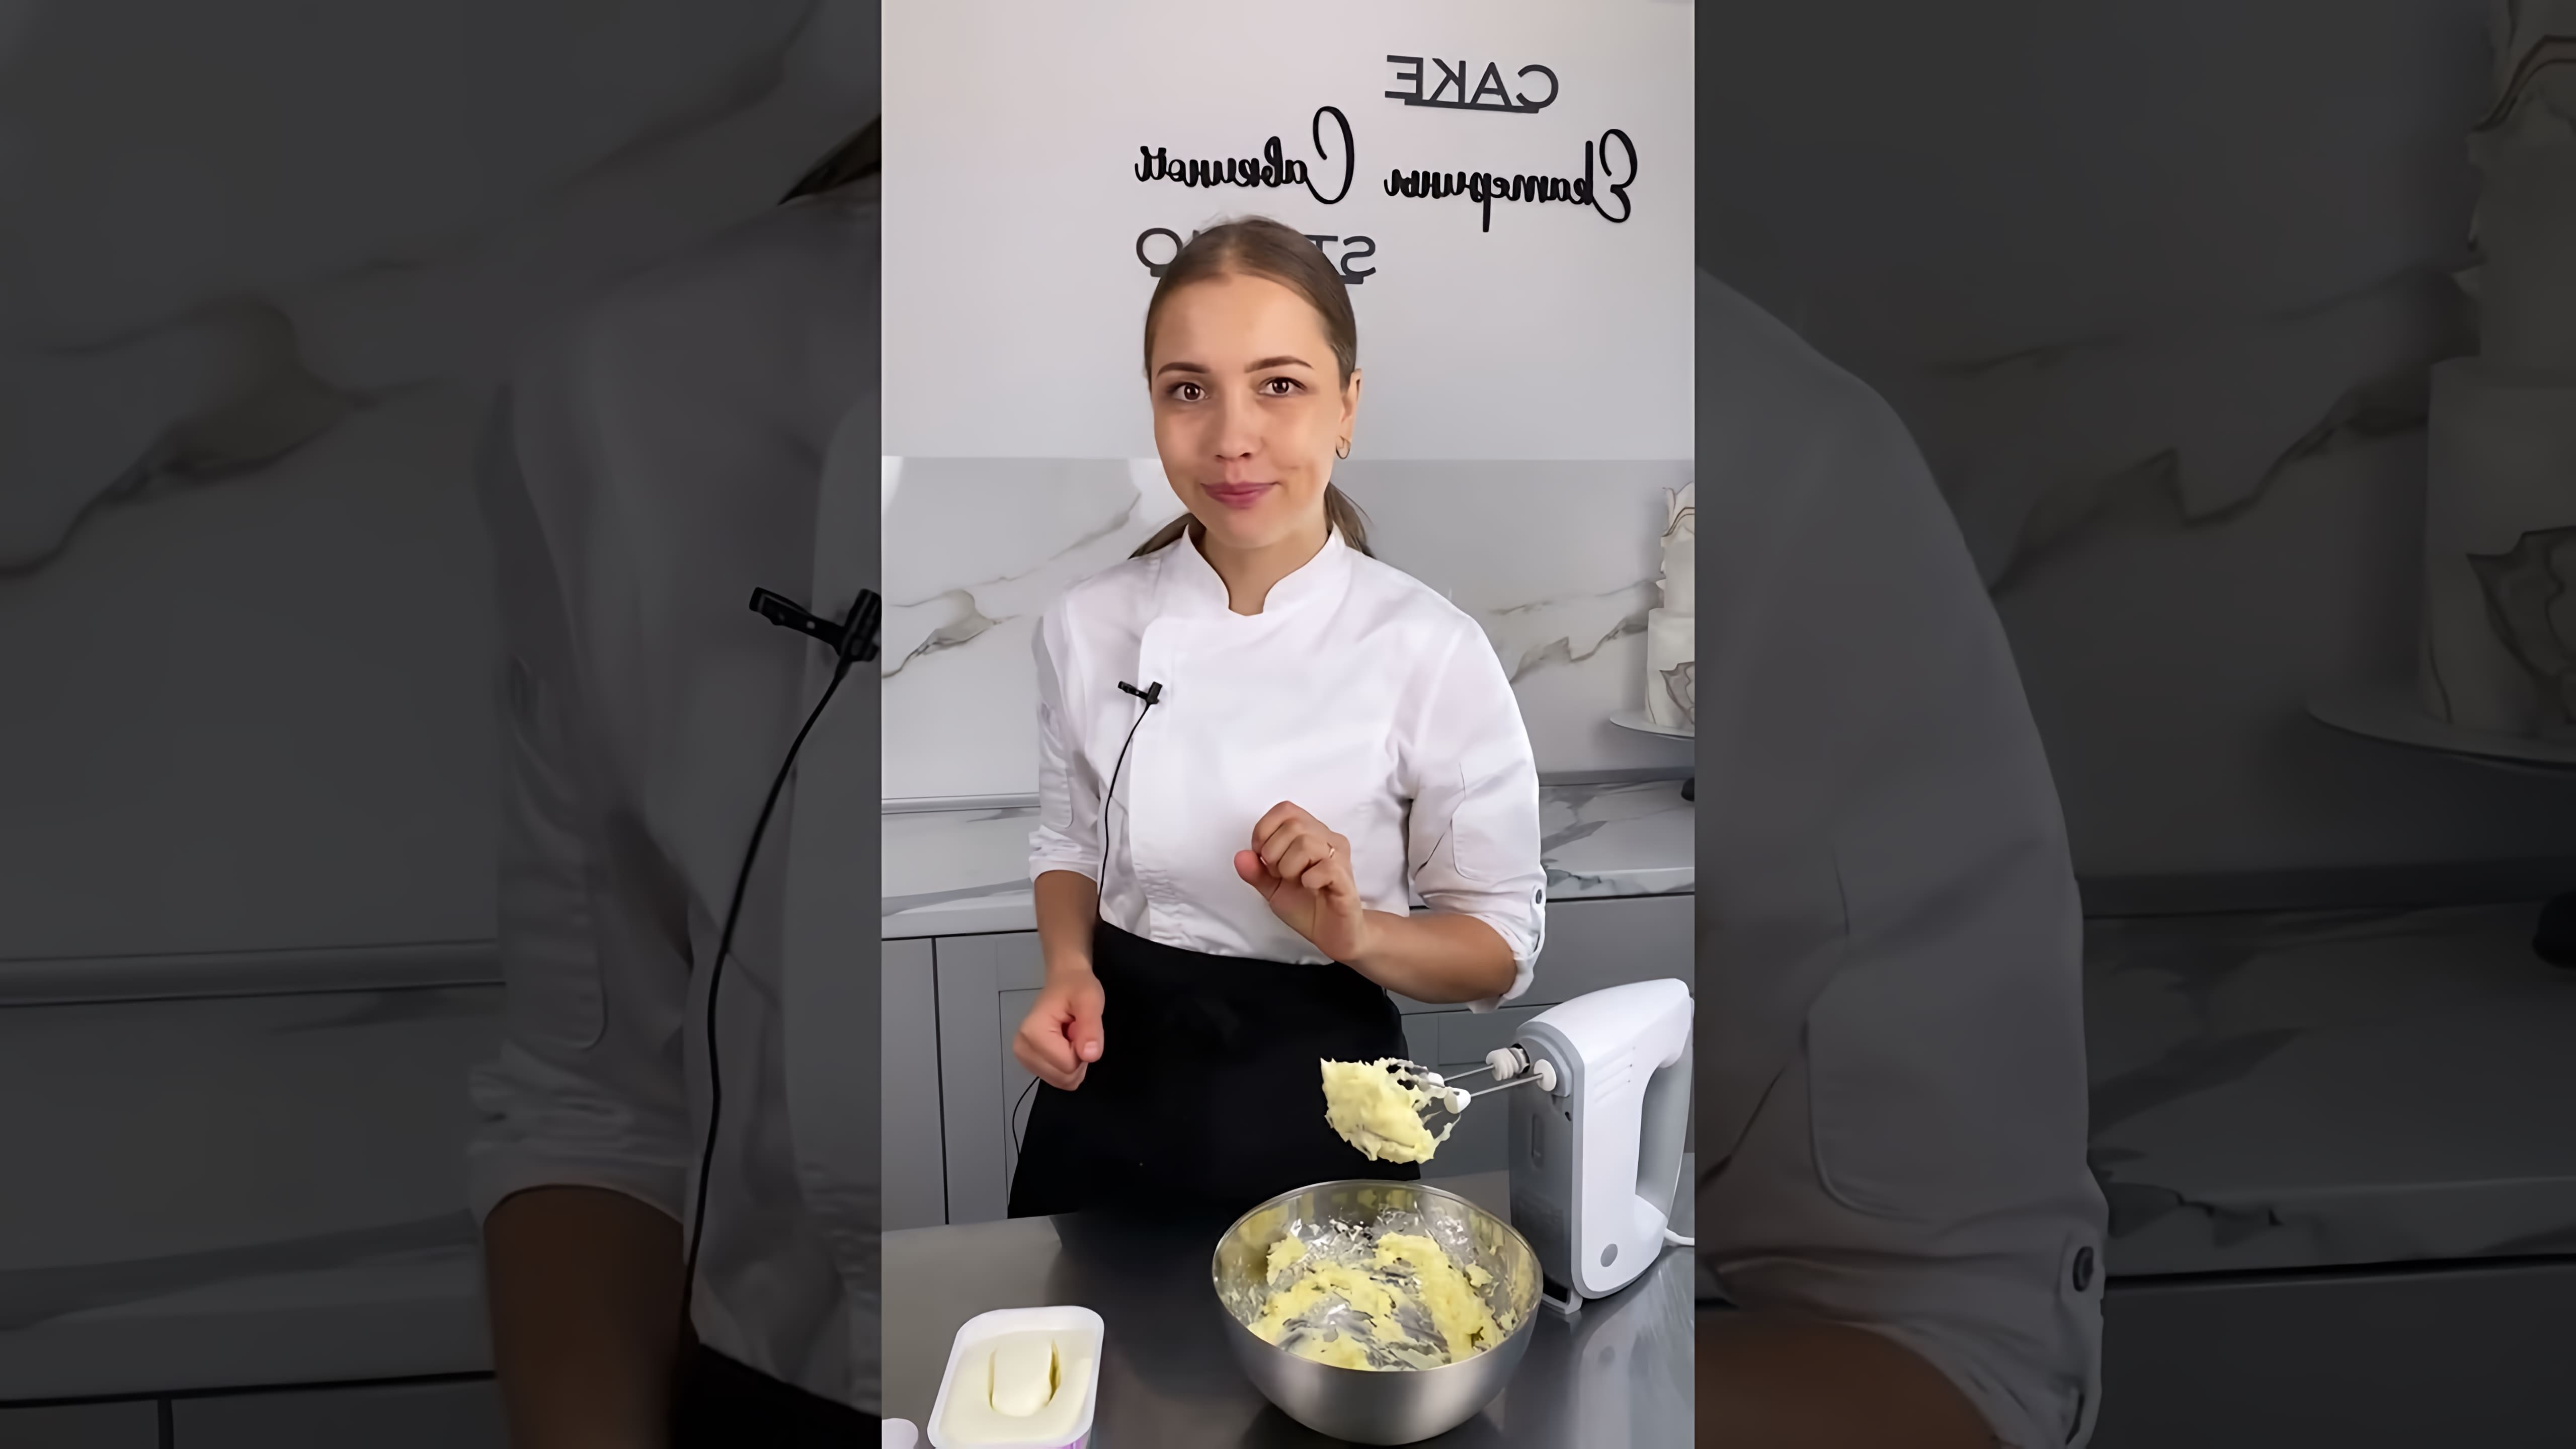 В этом видео демонстрируется процесс приготовления крема-чиза на масле для покрытия торта